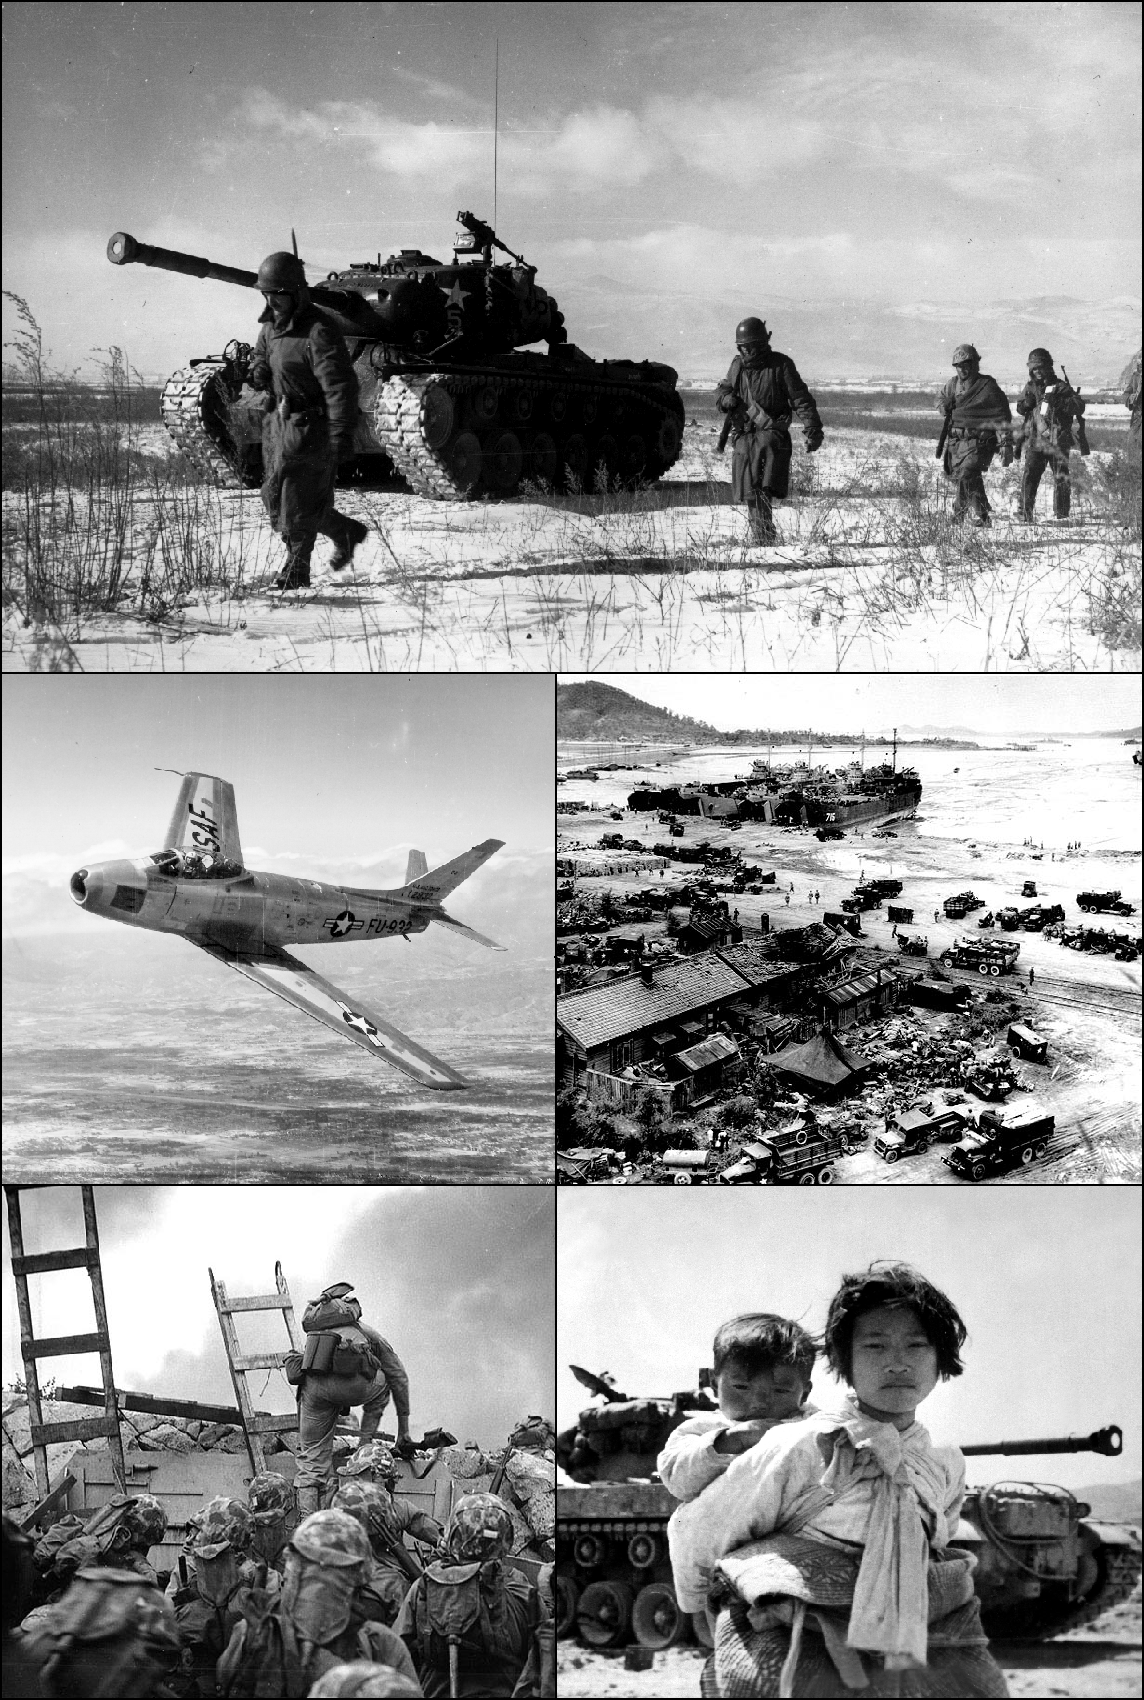 Sammensetting av fem bilder fra Korea-krigen. Øverst ser man et militær kjøretøy med fire soldater som går forbi. Neste bilde er at et fly i luften. Deretter ser man et oversiktsbilde av en flyktningleir. Så ser man amerikanske tropper i kamp. Det siste bilde er av en koreansk jente, som bærer et lite barn på ryggen.